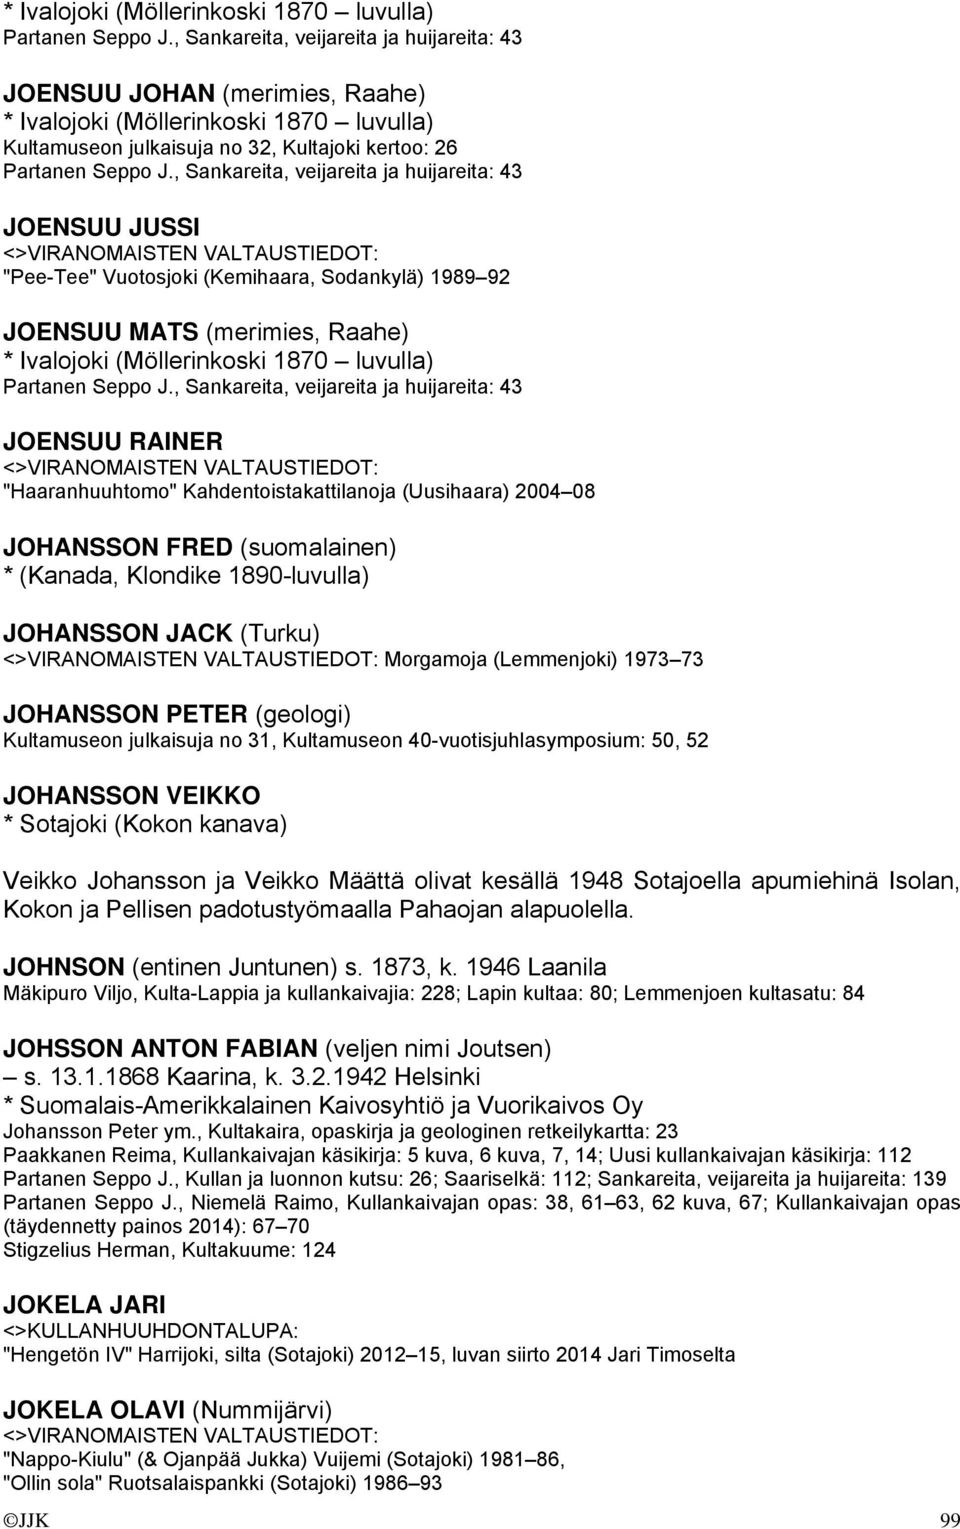 , Sankareita, veijareita ja huijareita: 43 JOENSUU JUSSI "Pee-Tee" Vuotosjoki (Kemihaara, Sodankylä) 1989 92 JOENSUU MATS (merimies, Raahe) , Sankareita, veijareita ja huijareita: 43 JOENSUU RAINER